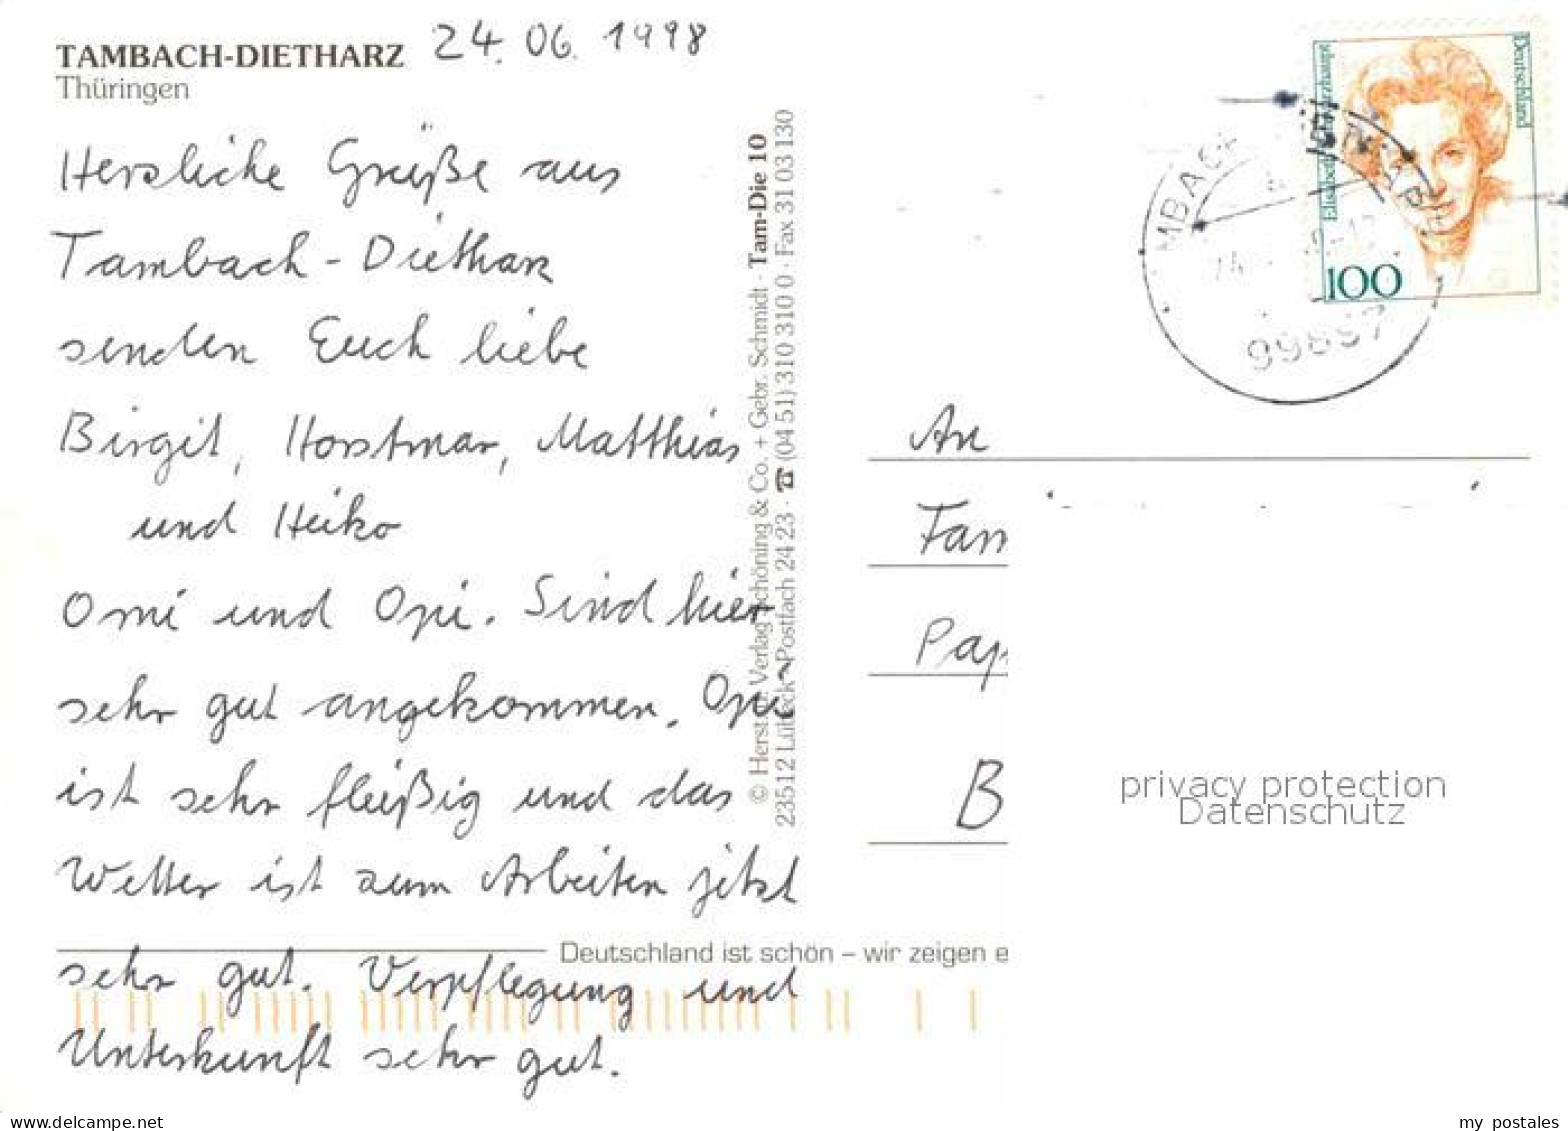 72639700 Tambach-Dietharz Panorama Hoegstrasse Alte Talsperre Wappen Tambach-Die - Tambach-Dietharz